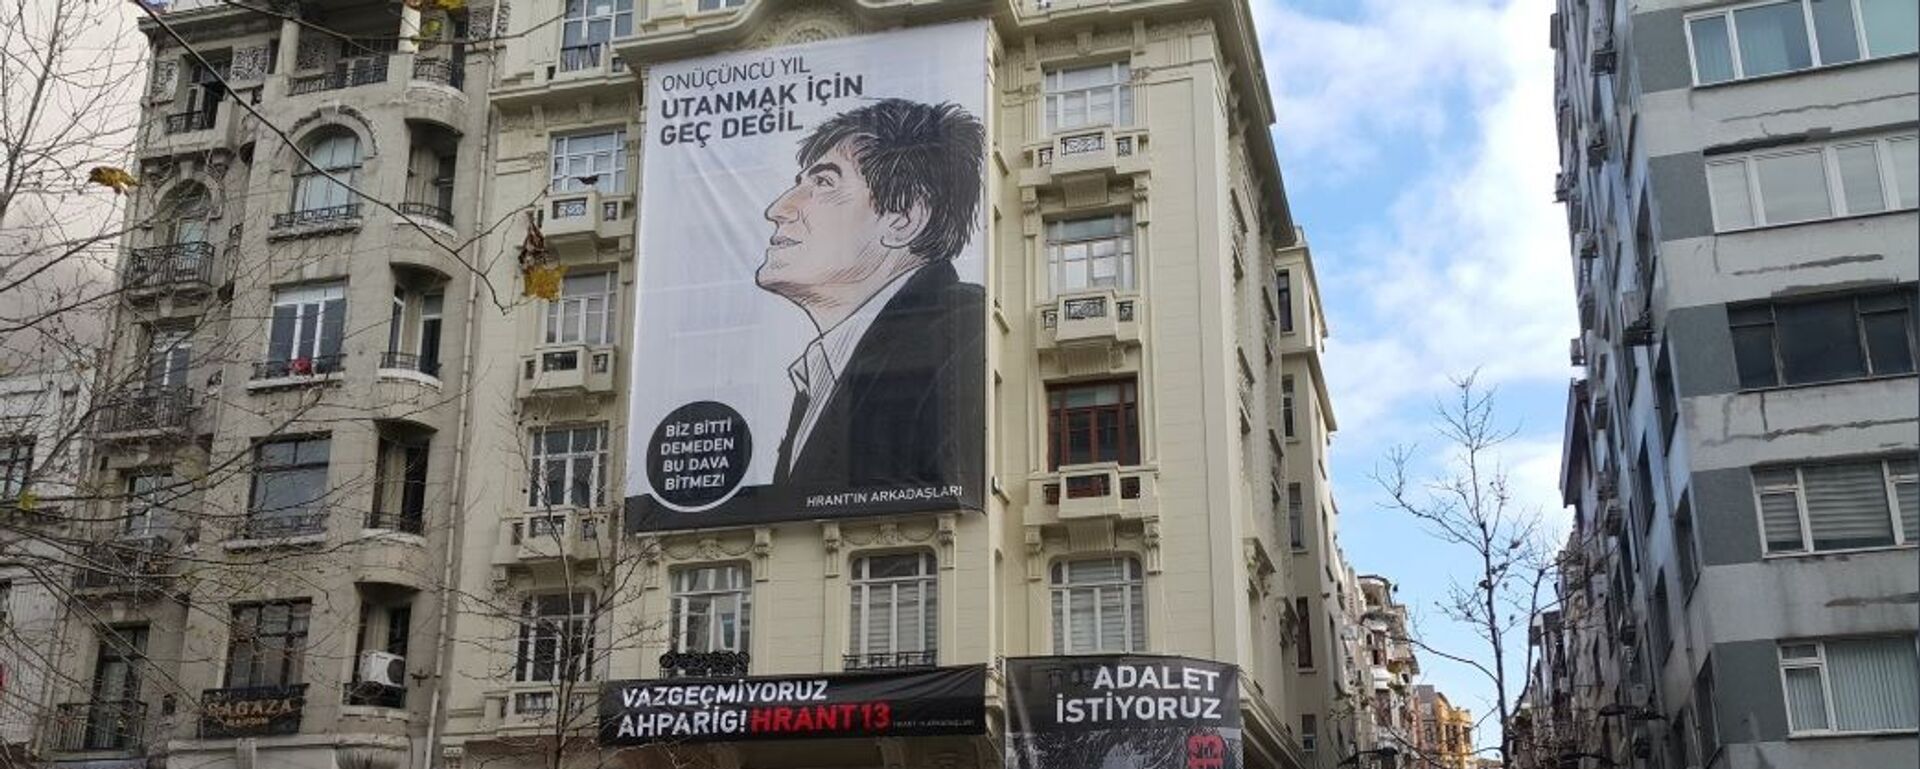 Gazeteci Hrant Dink öldürülüşünün 13’üncü yılında anıldı.  - Sputnik Türkiye, 1920, 20.09.2023